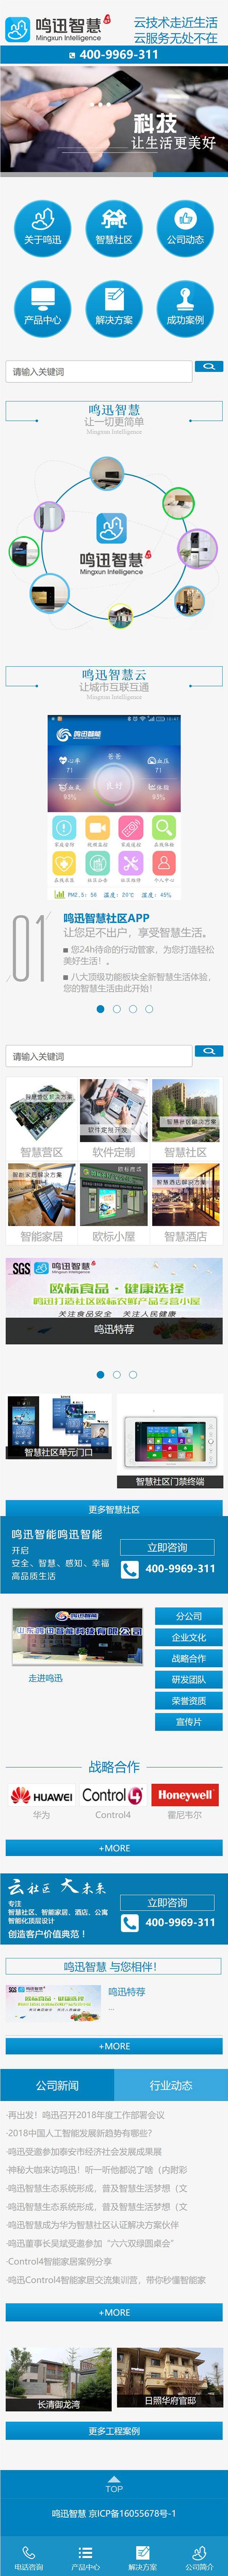 鸣迅智慧(北京)云技术有限公司,济南网站建设